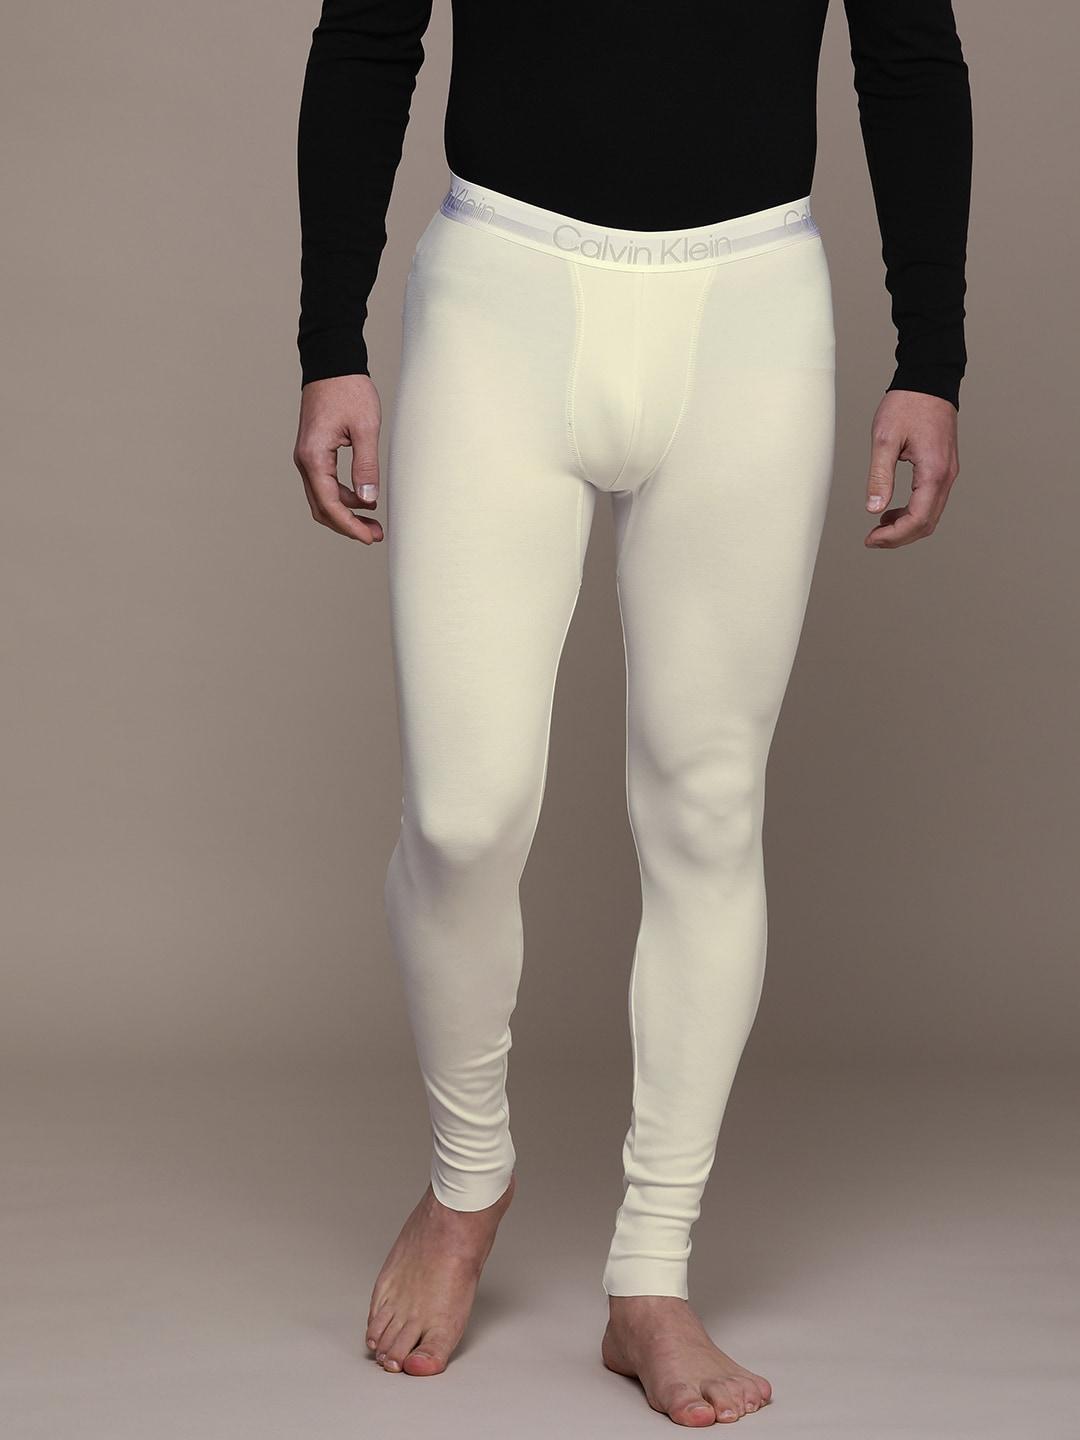 calvin klein underwear men off-white solid lounge pants